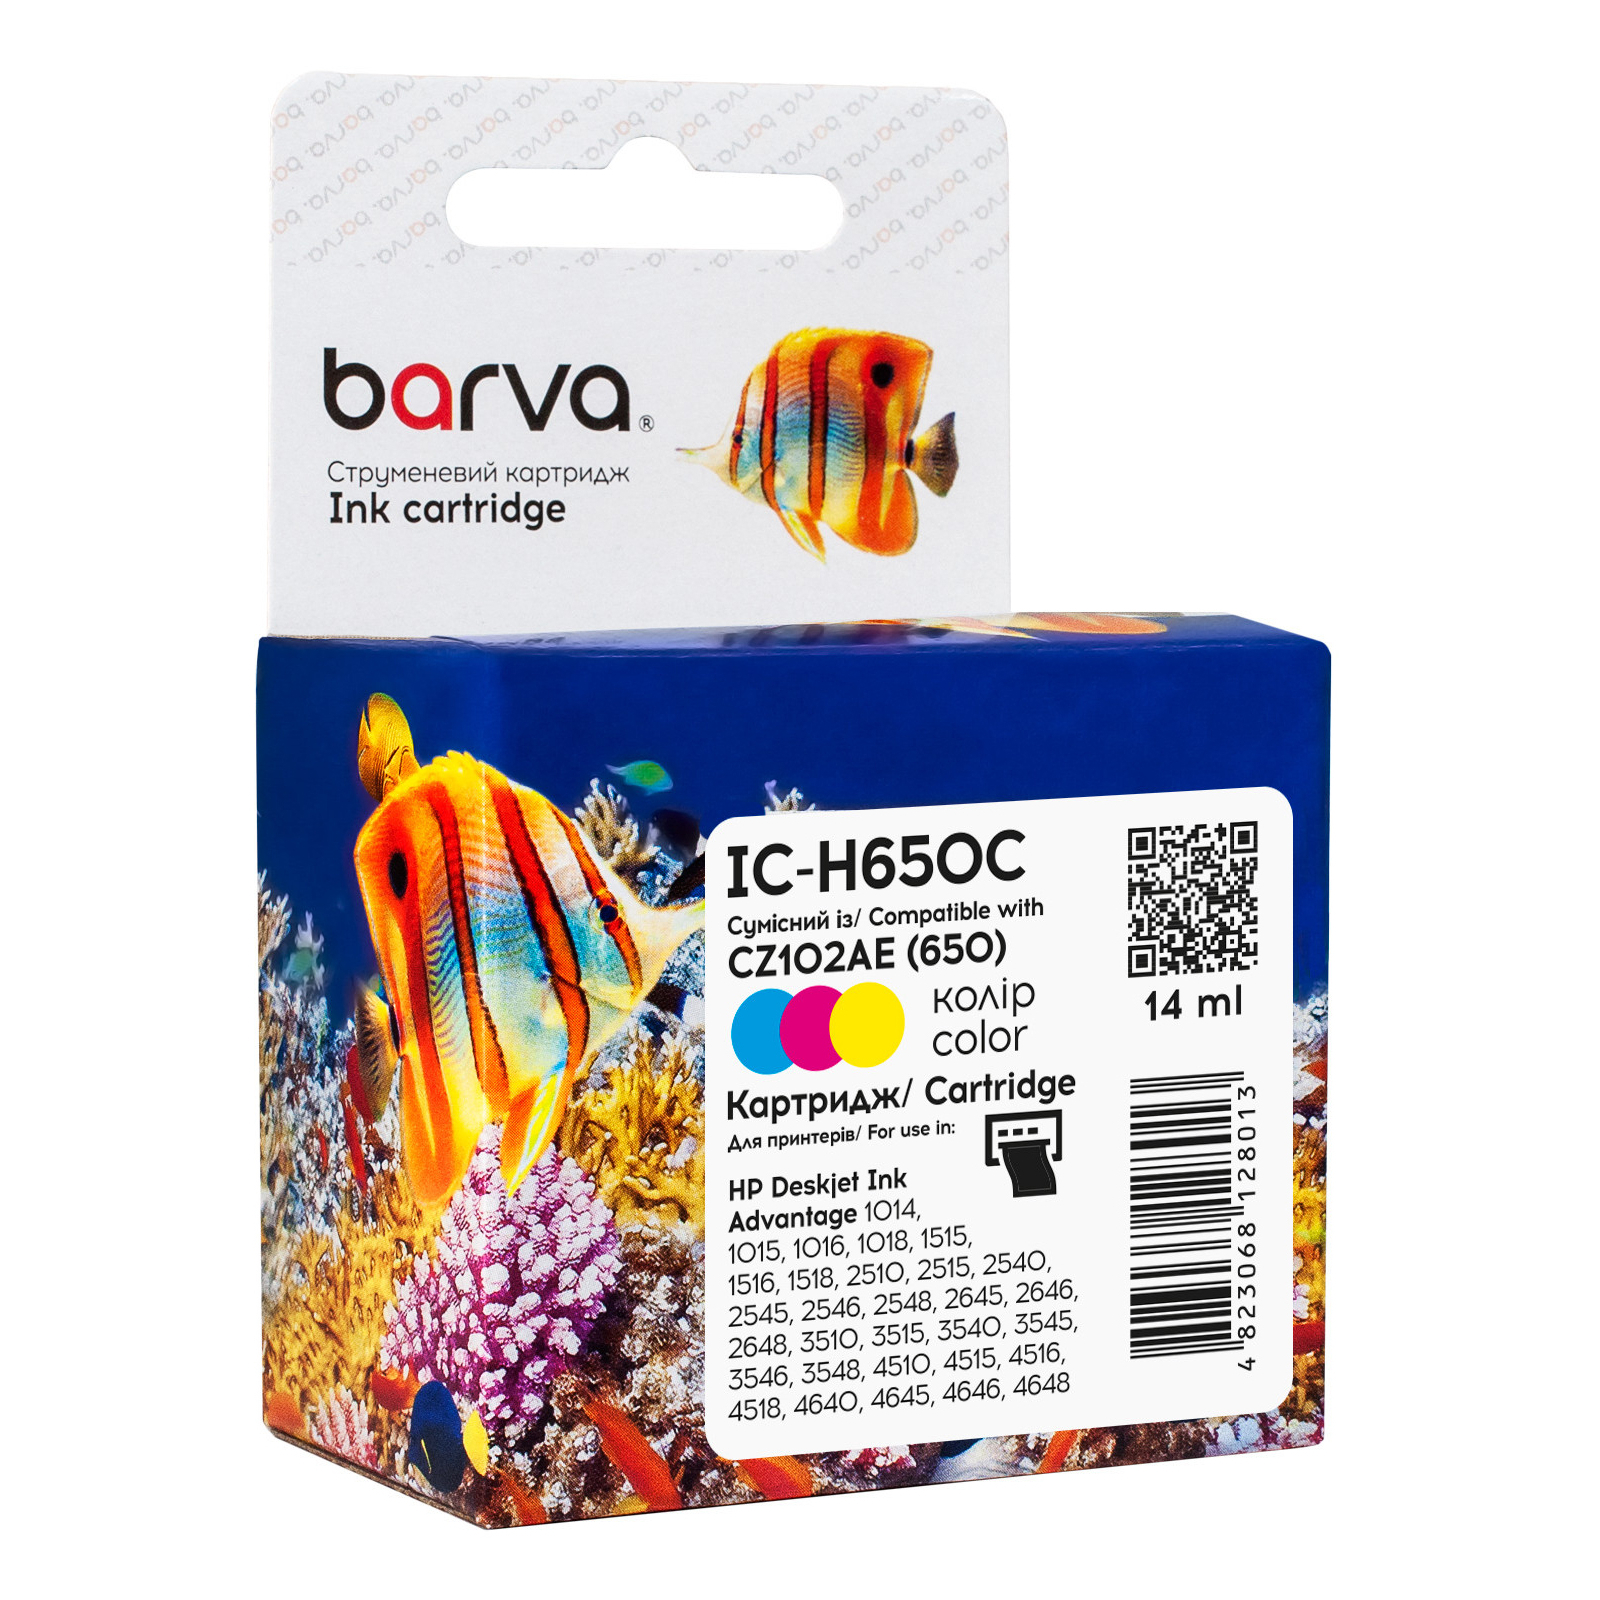 Картридж Barva HP 650 color/CZ102AE, 14 мл (IC-H650C)